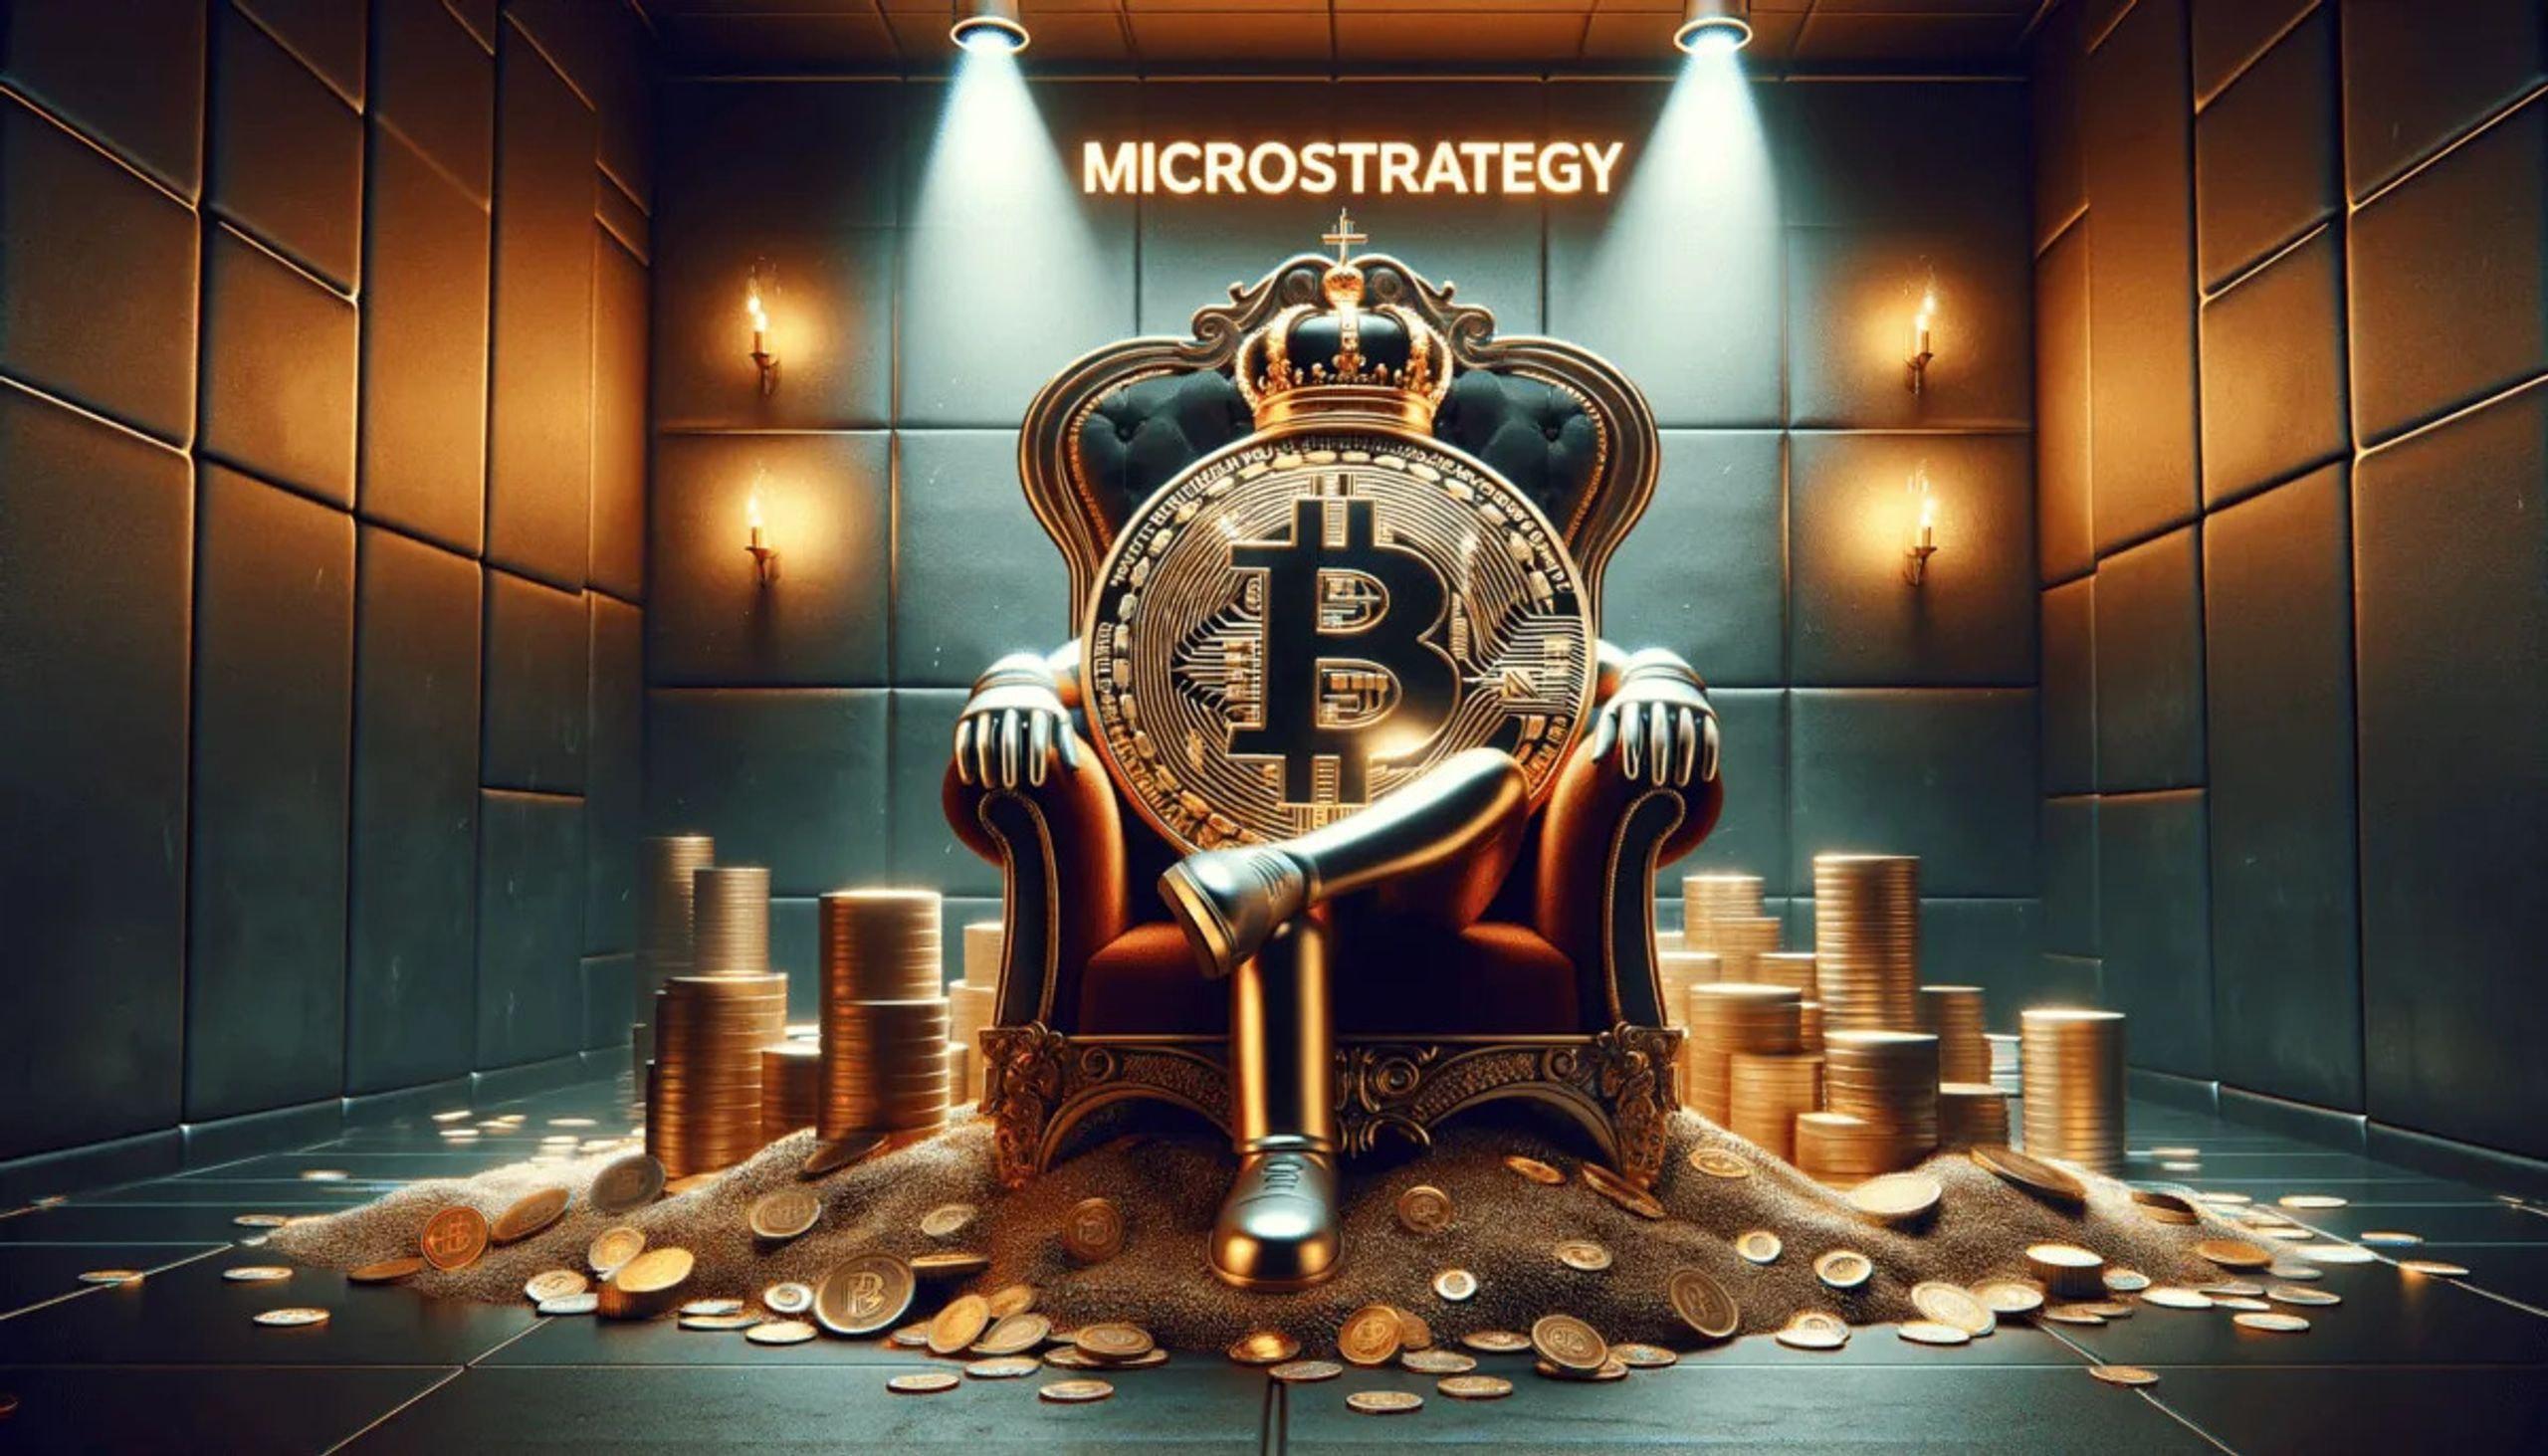 microstrategy đang có chiến lược đầu tư lớn vào bitcoin